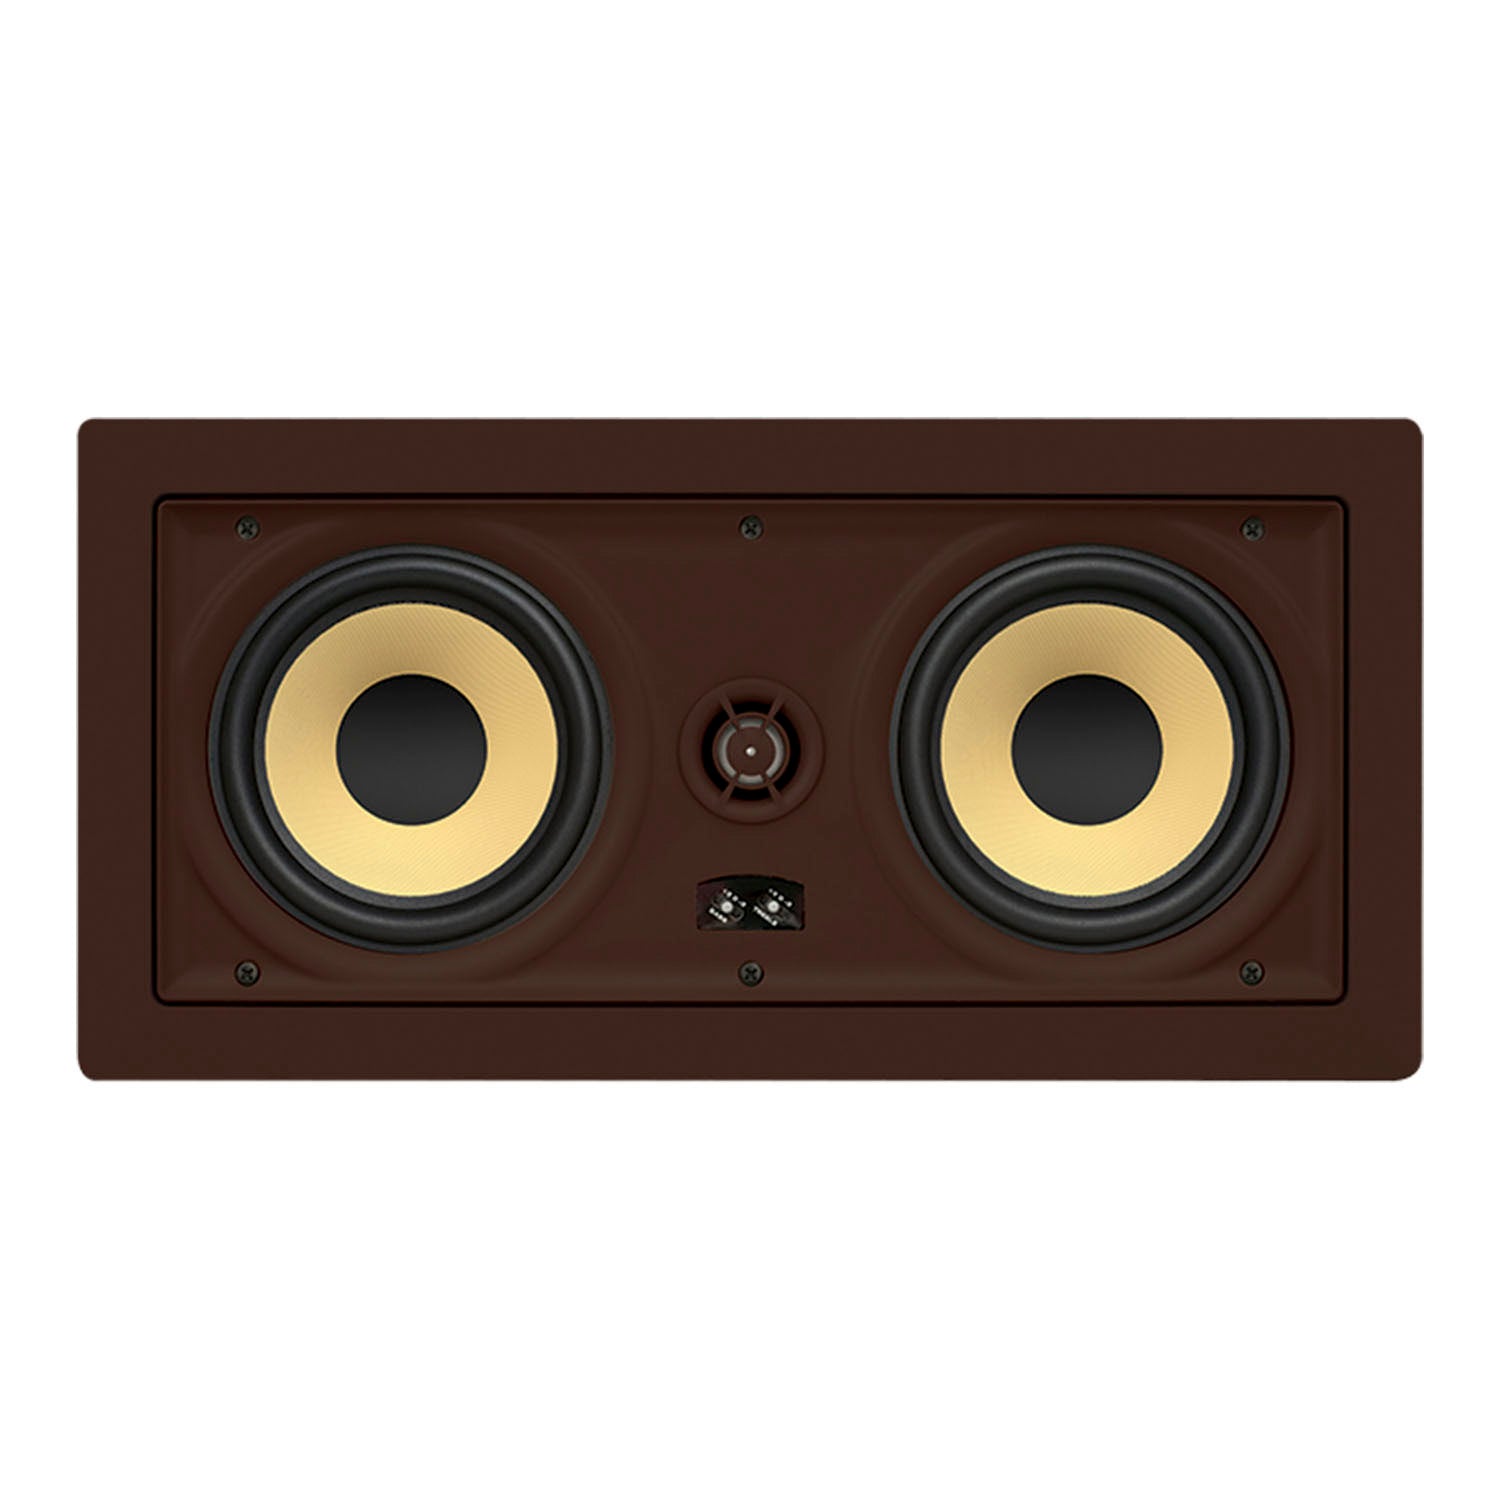 Proficient Audio Signature Series IW575s Dual 5.25" LCR Inceiling Speaker - piece